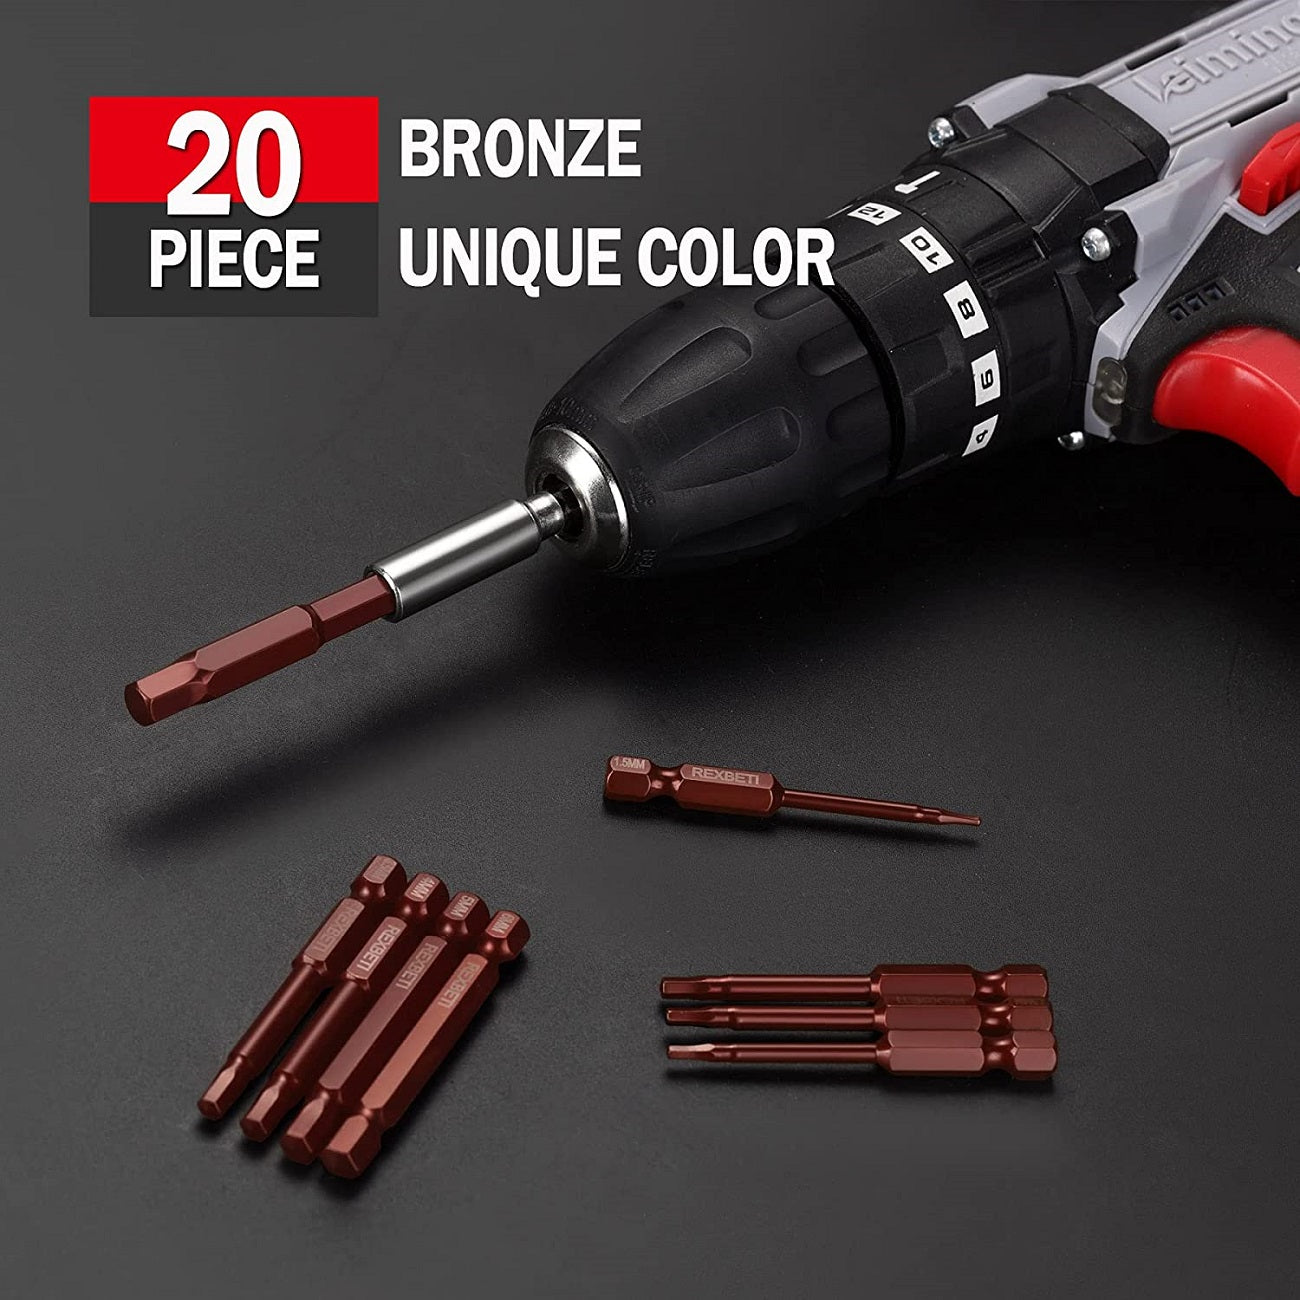 REXBETI 20 Piece Bronze Hex Head Allen Wrench Drill Bit Set